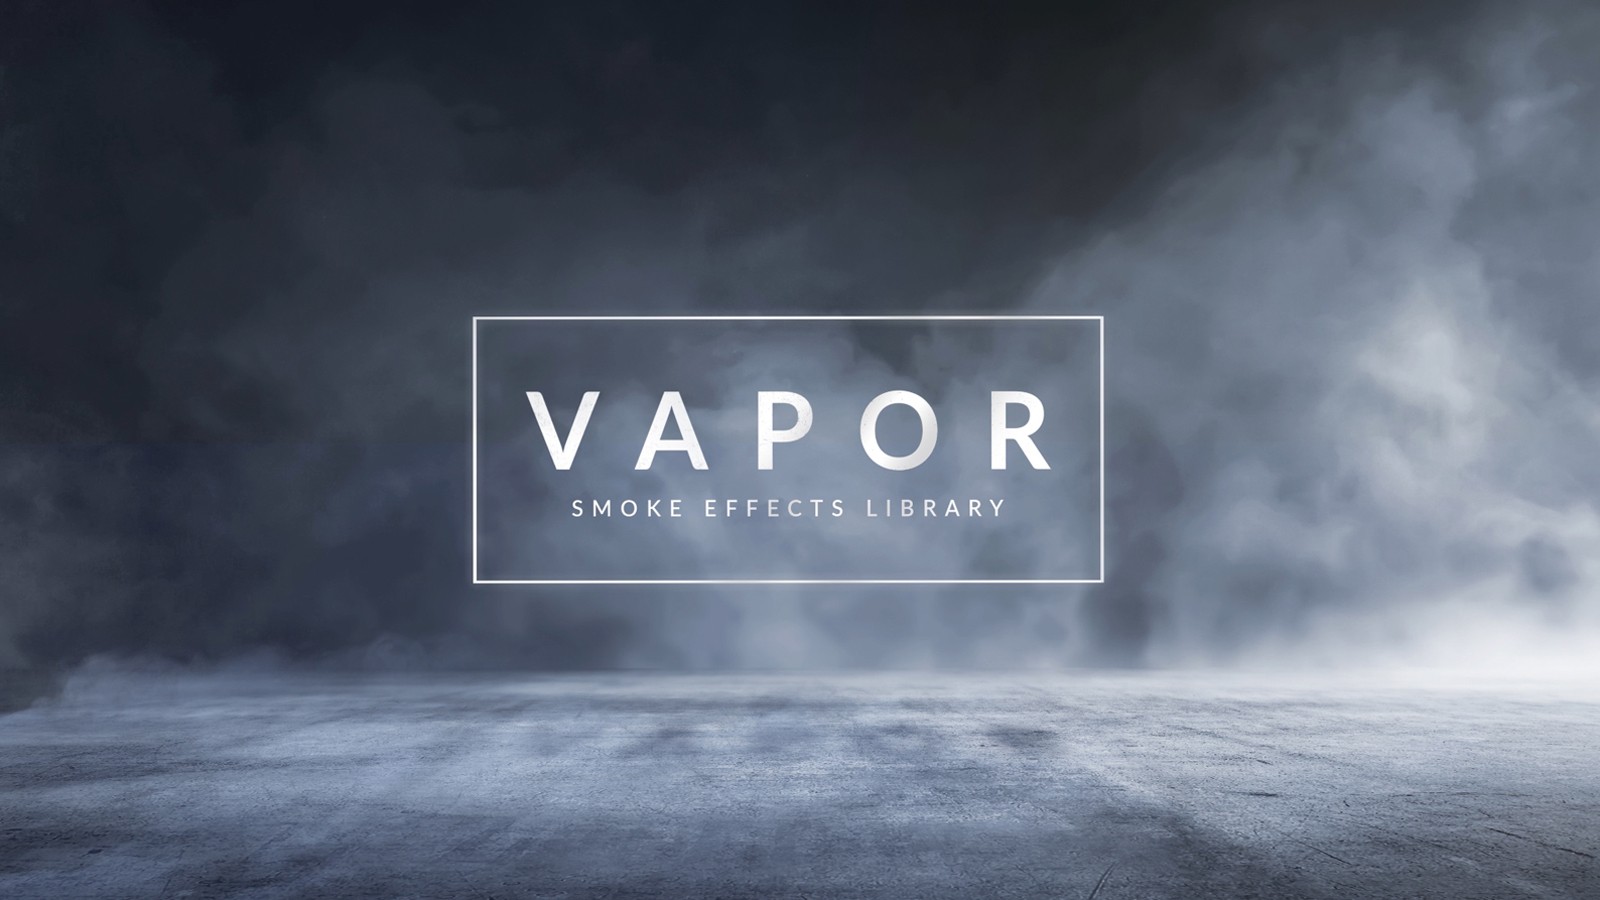 VAPOR 100 SMOKE FOG EFFECTS ROCKETSTOCK Free After Effects Rocketstock